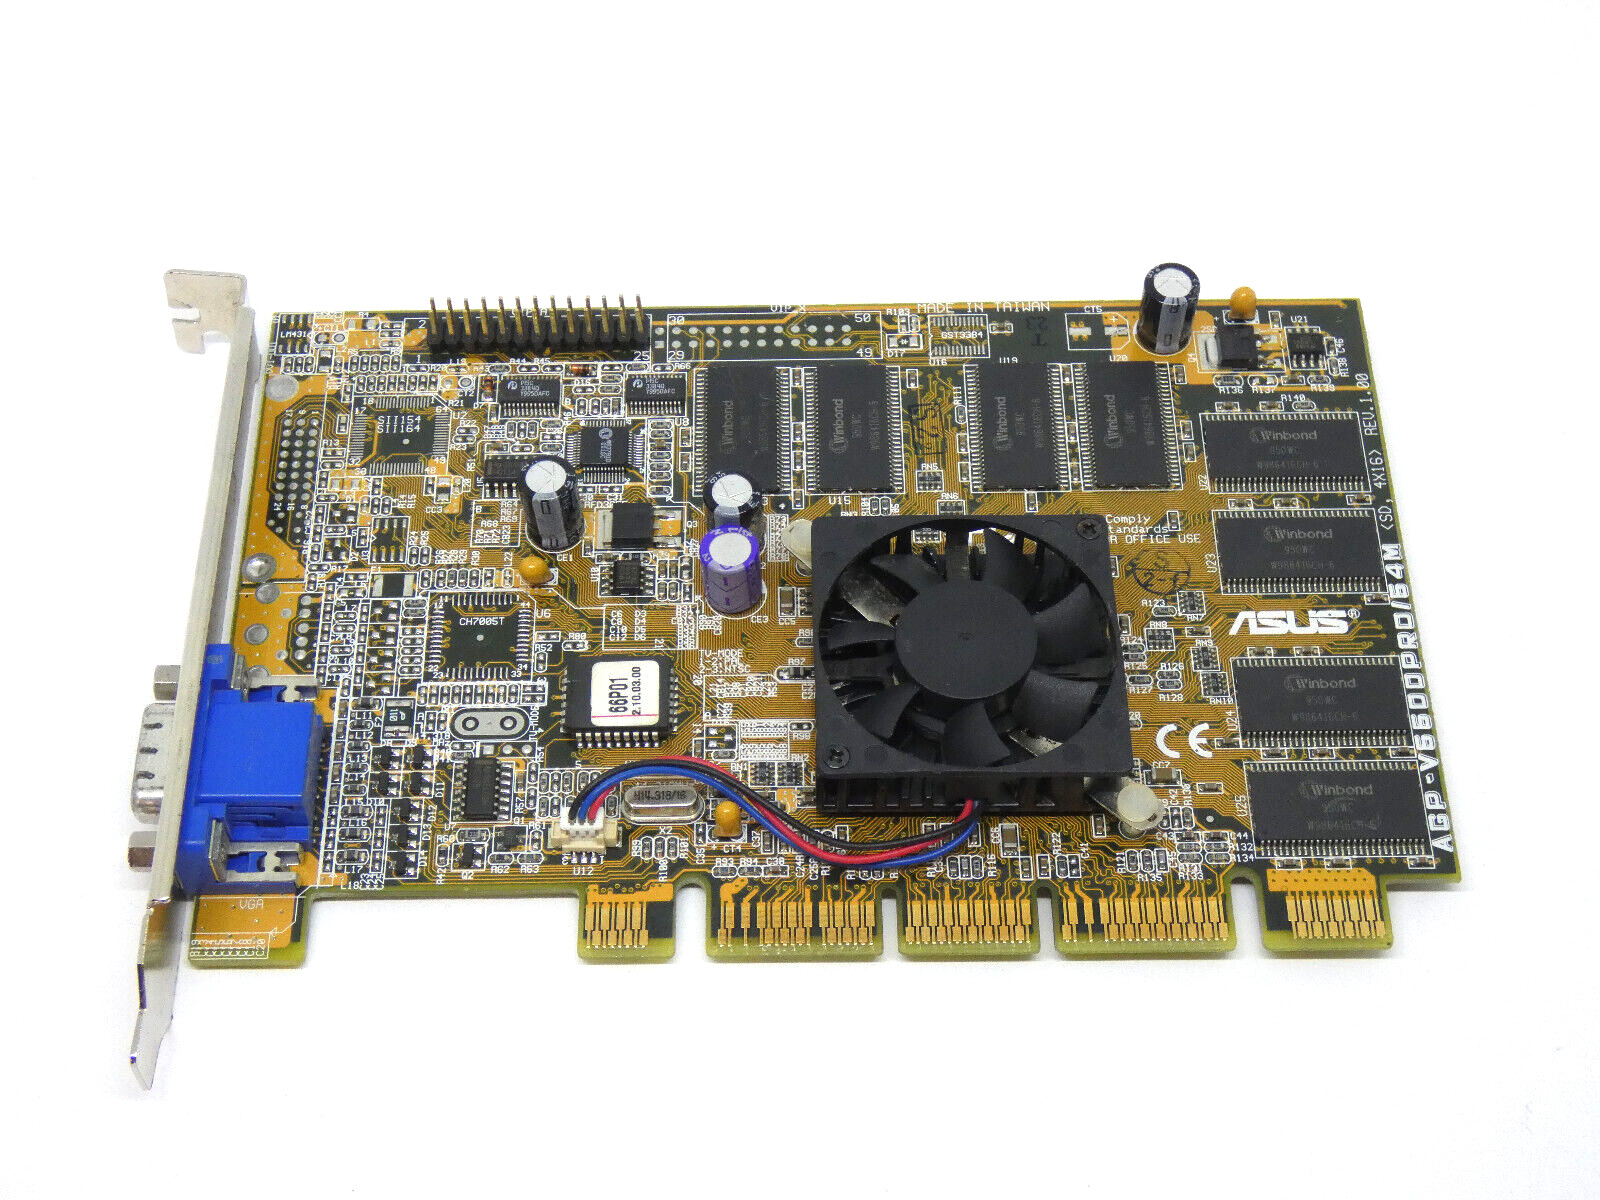 ASUS AGP-V6600PRO/64M GeForce256 DDR SDRAM 64MB  - AGP Slot